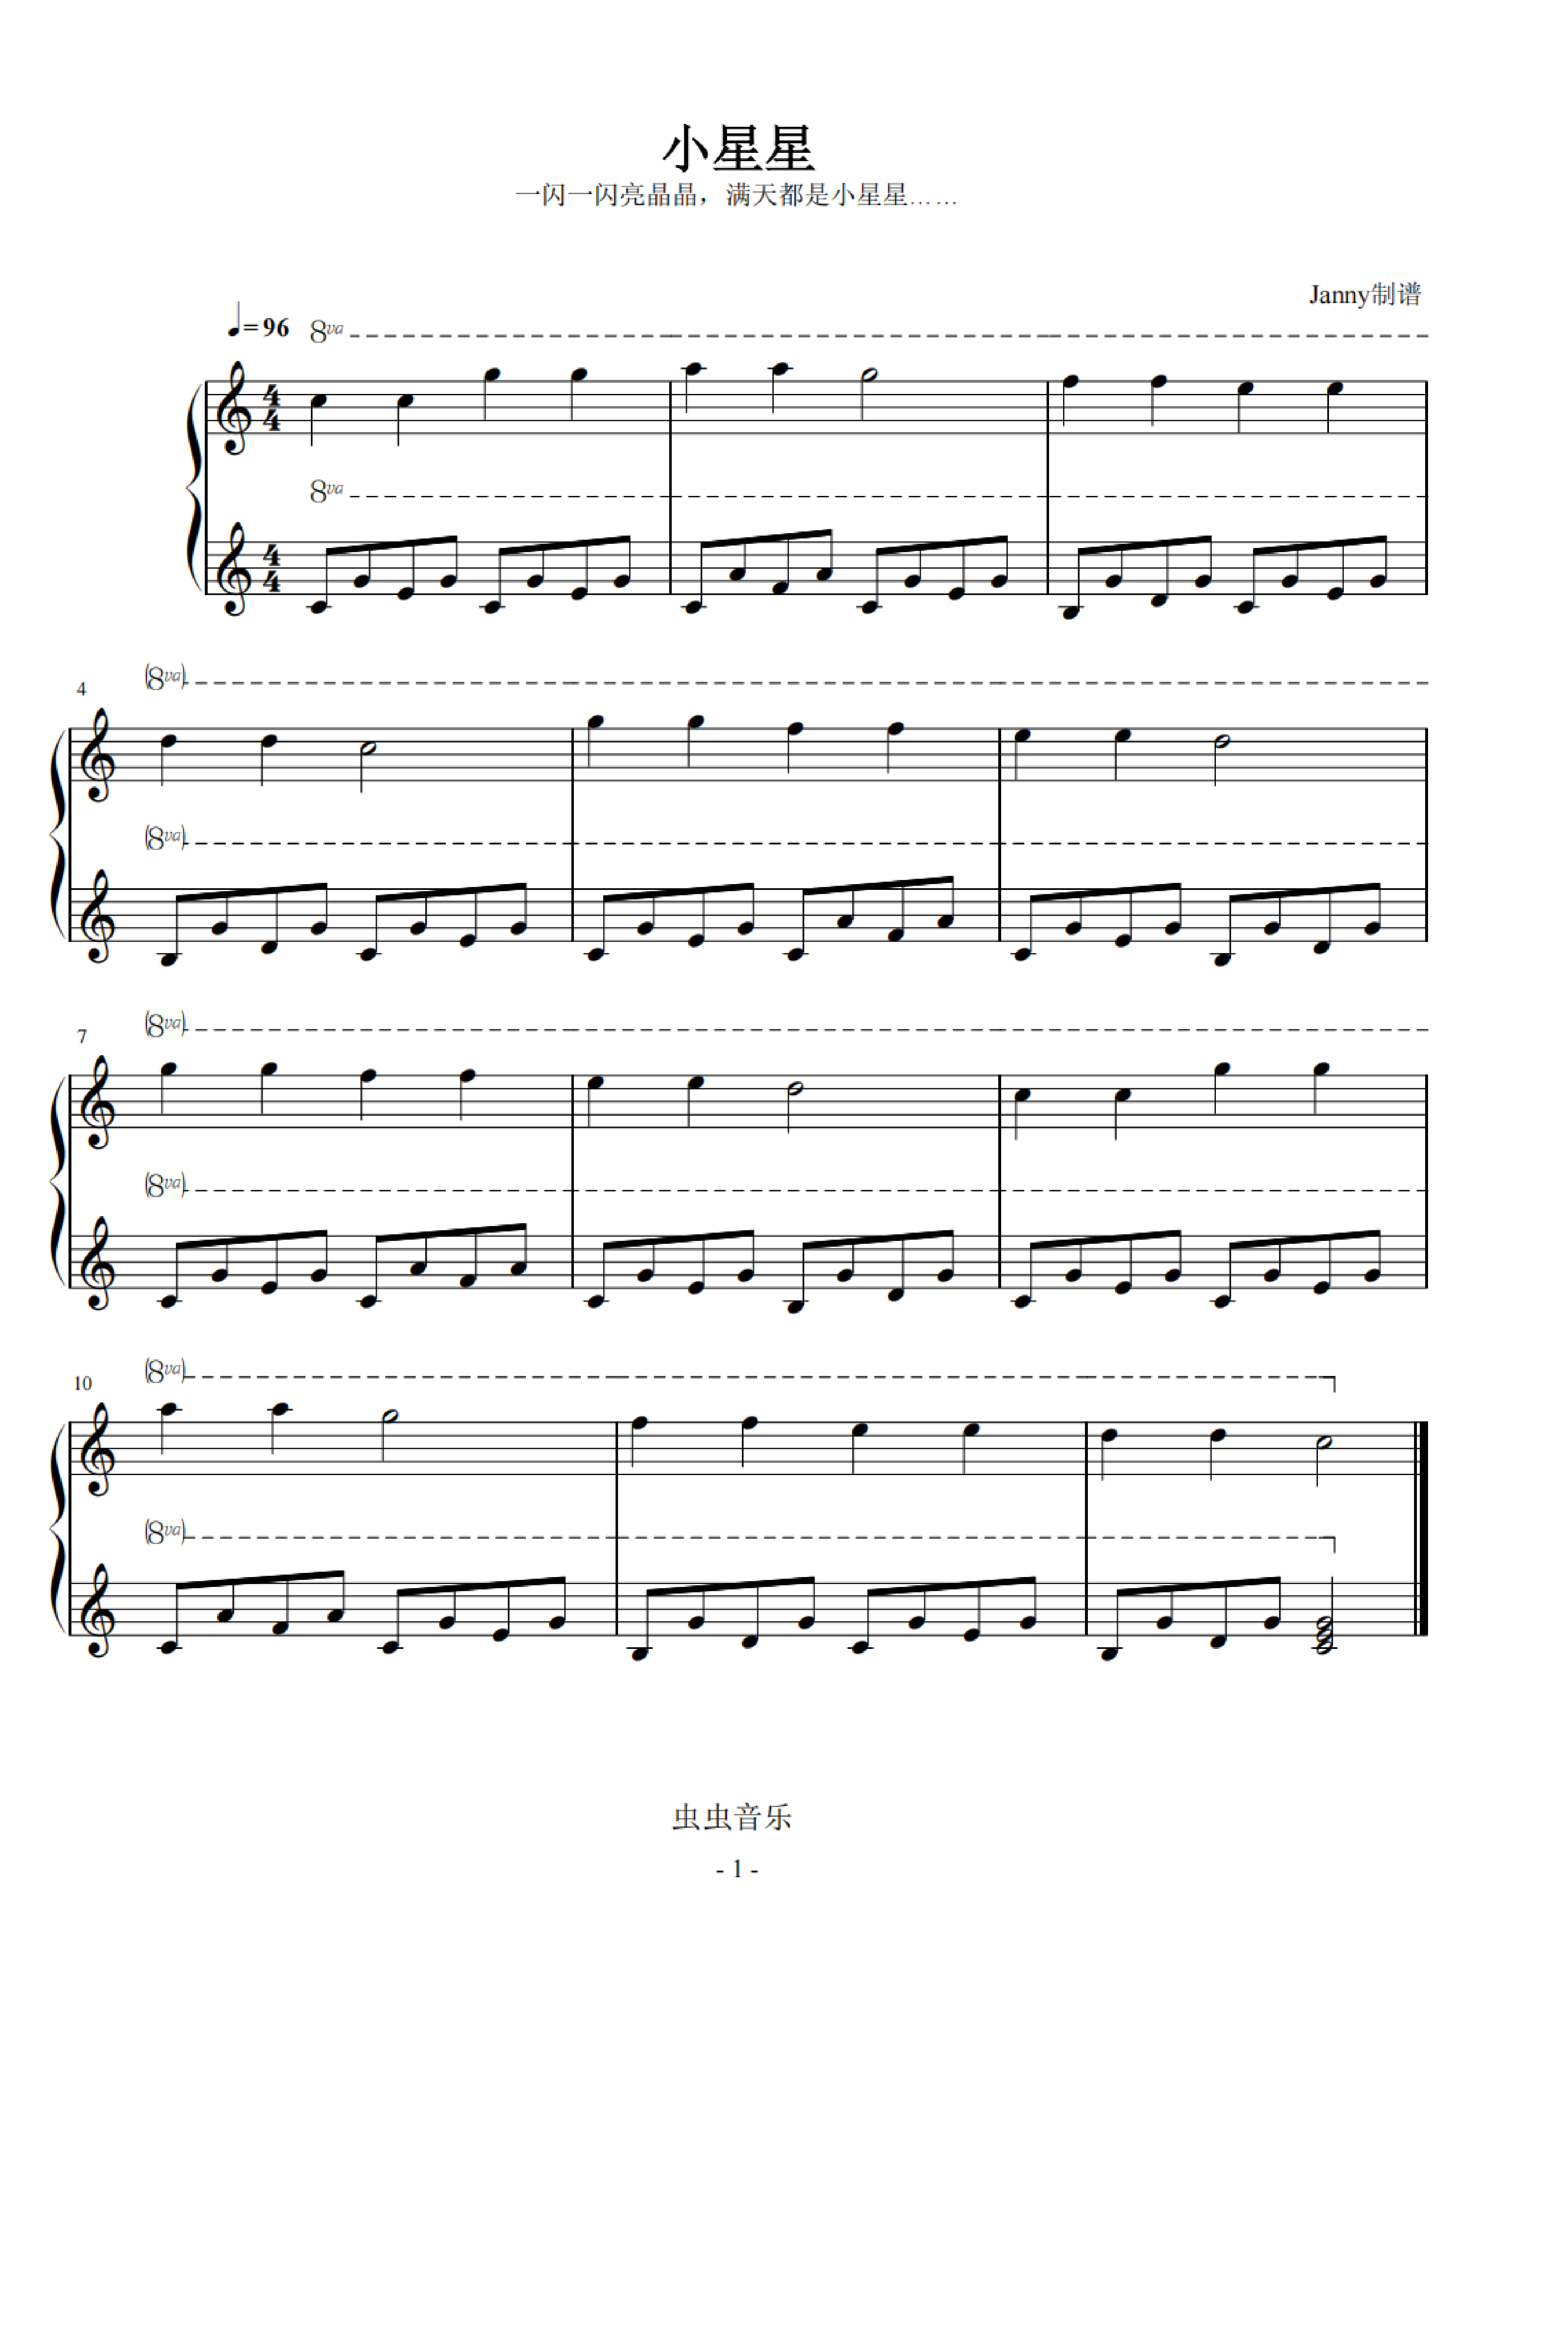 小星星(目前最简单版)钢琴谱